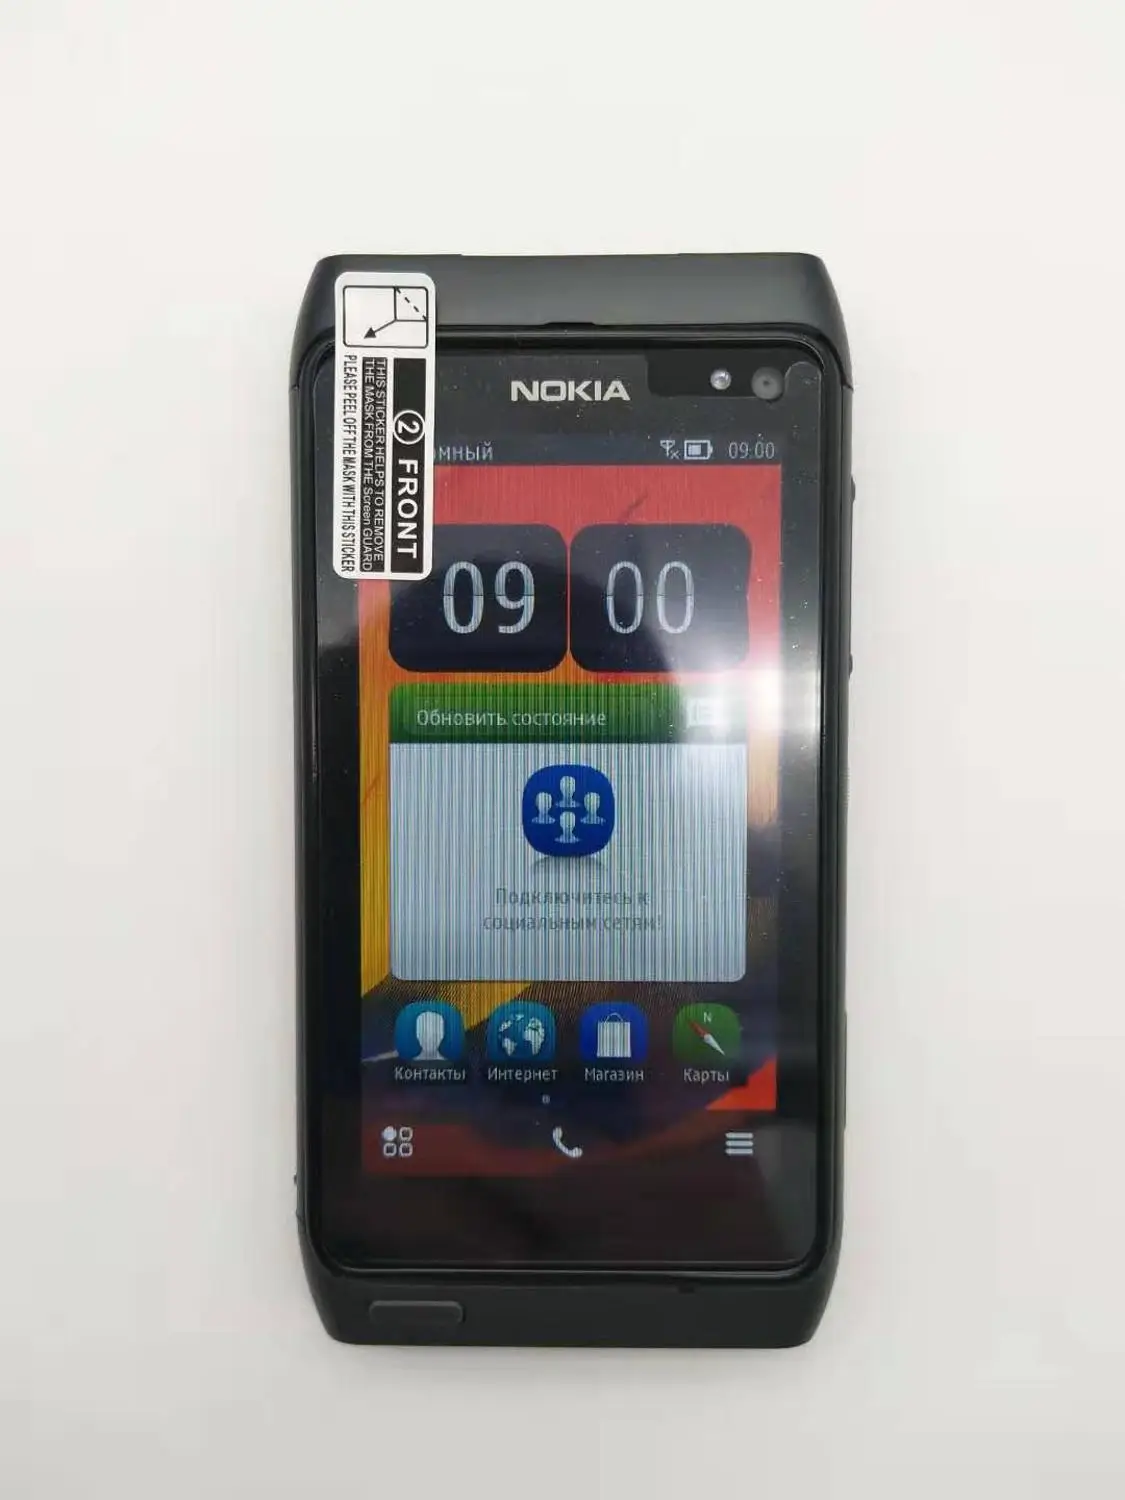 Мобильный телефон Nokia N8, 3g, wifi, gps, 12MP камера, 3,5 дюймов, сенсорный экран, 16 ГБ, хранилище, дешевый телефон, отремонтированный